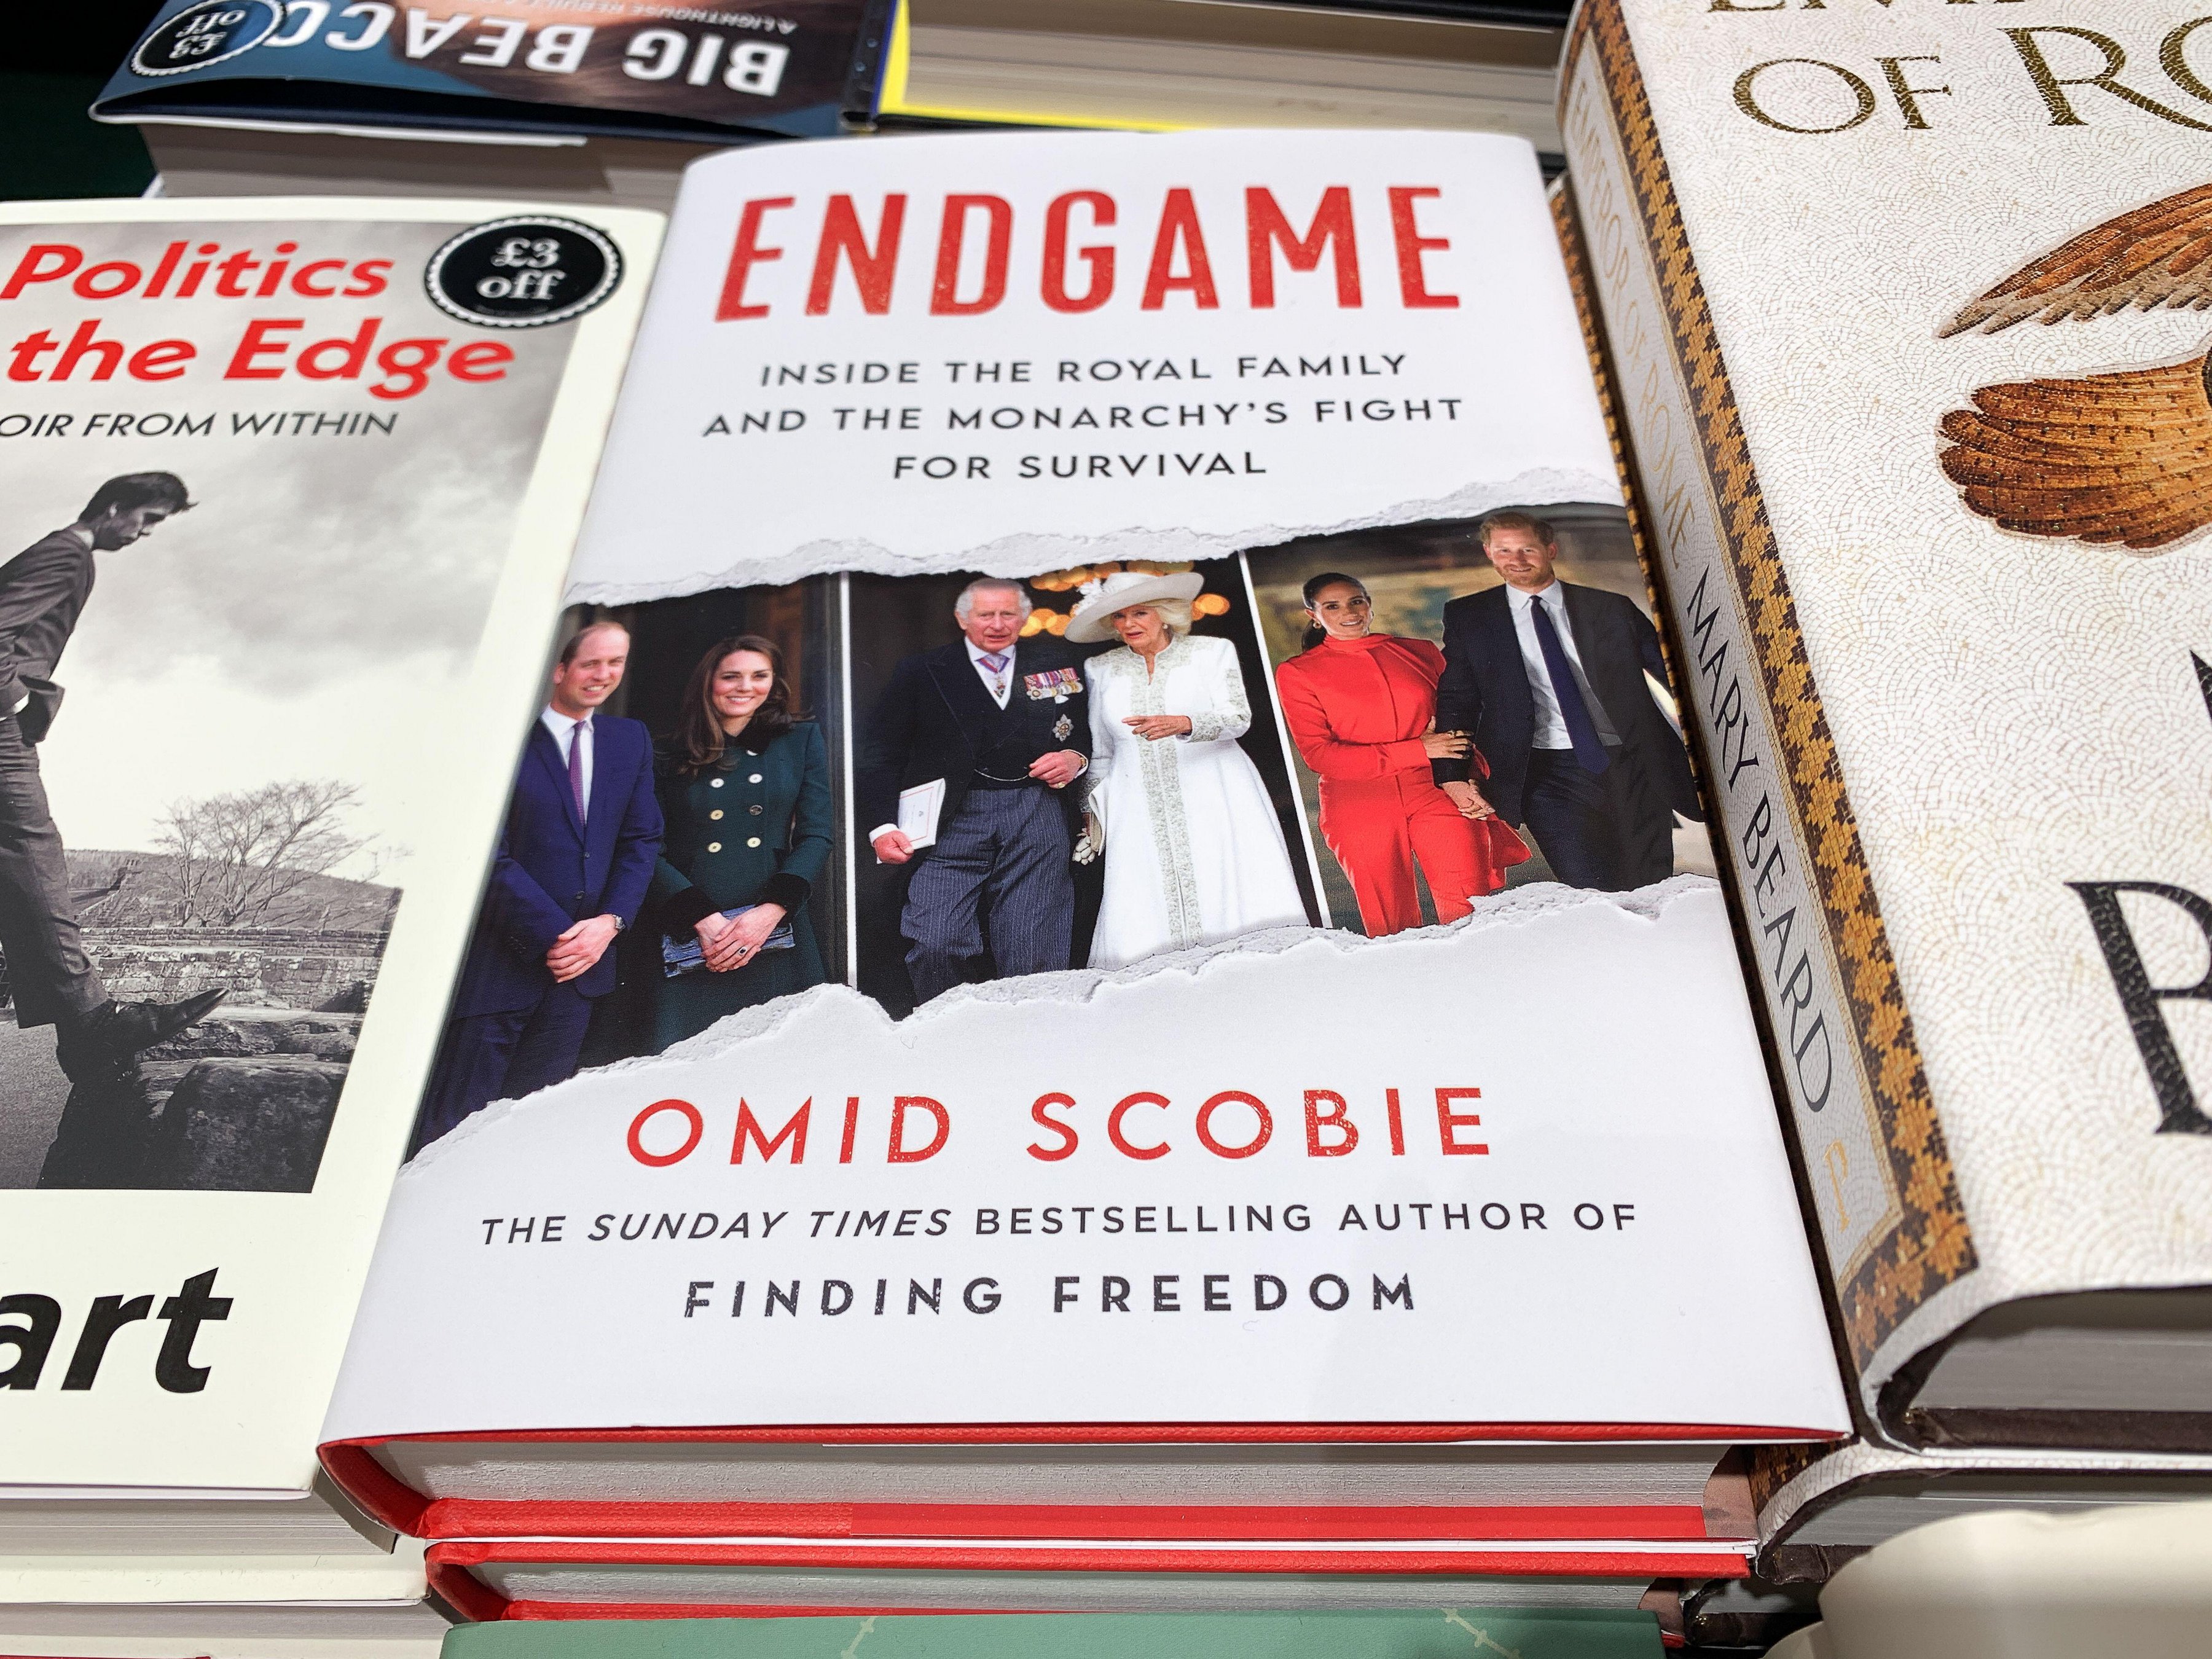 Le livre d'Omid Scobie, Endgame, aurait provoqué une nouvelle rupture royale